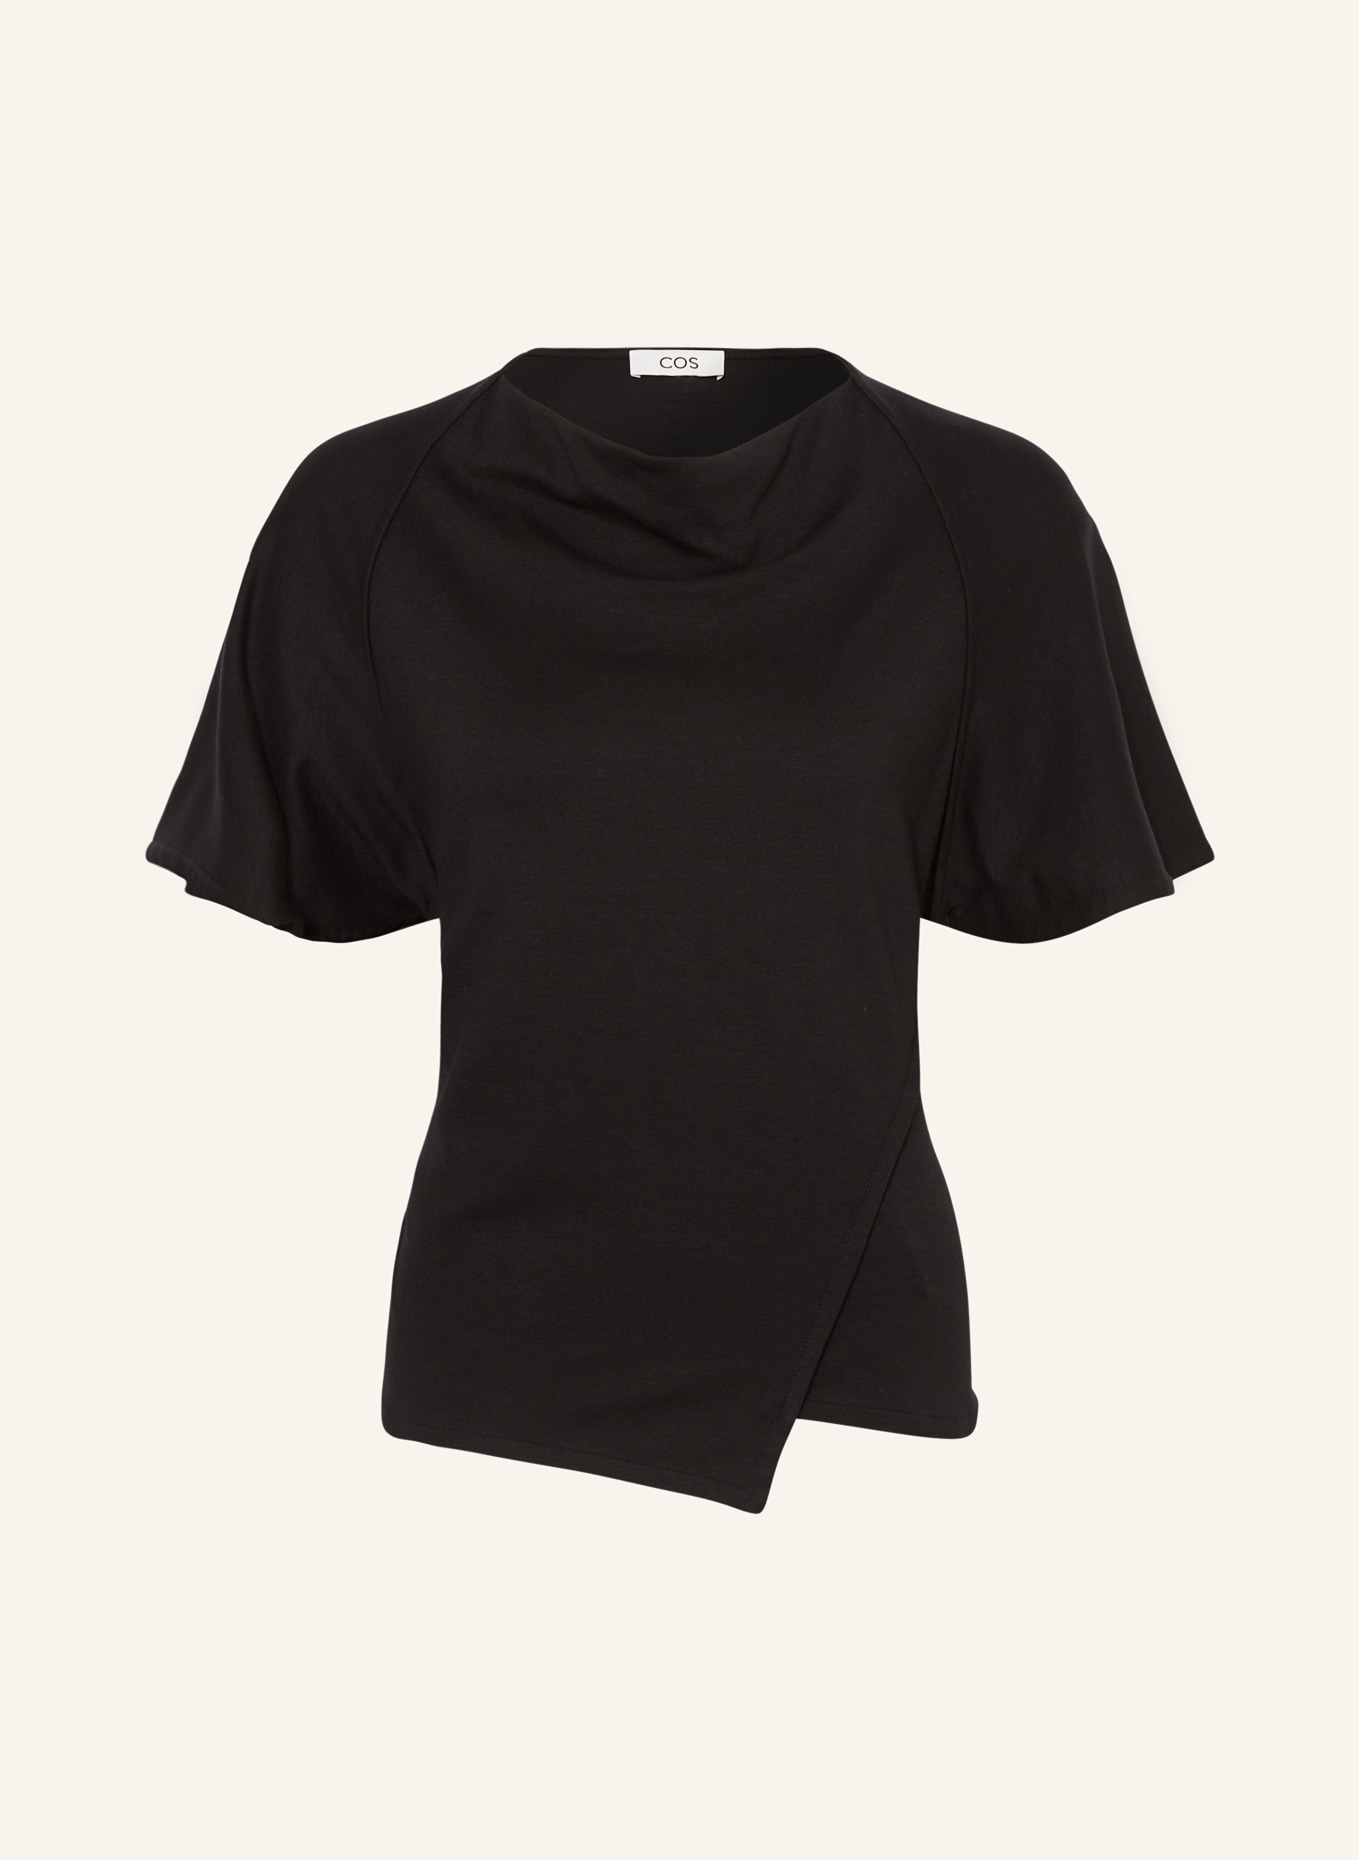 COS T-shirt, Color: BLACK (Image 1)